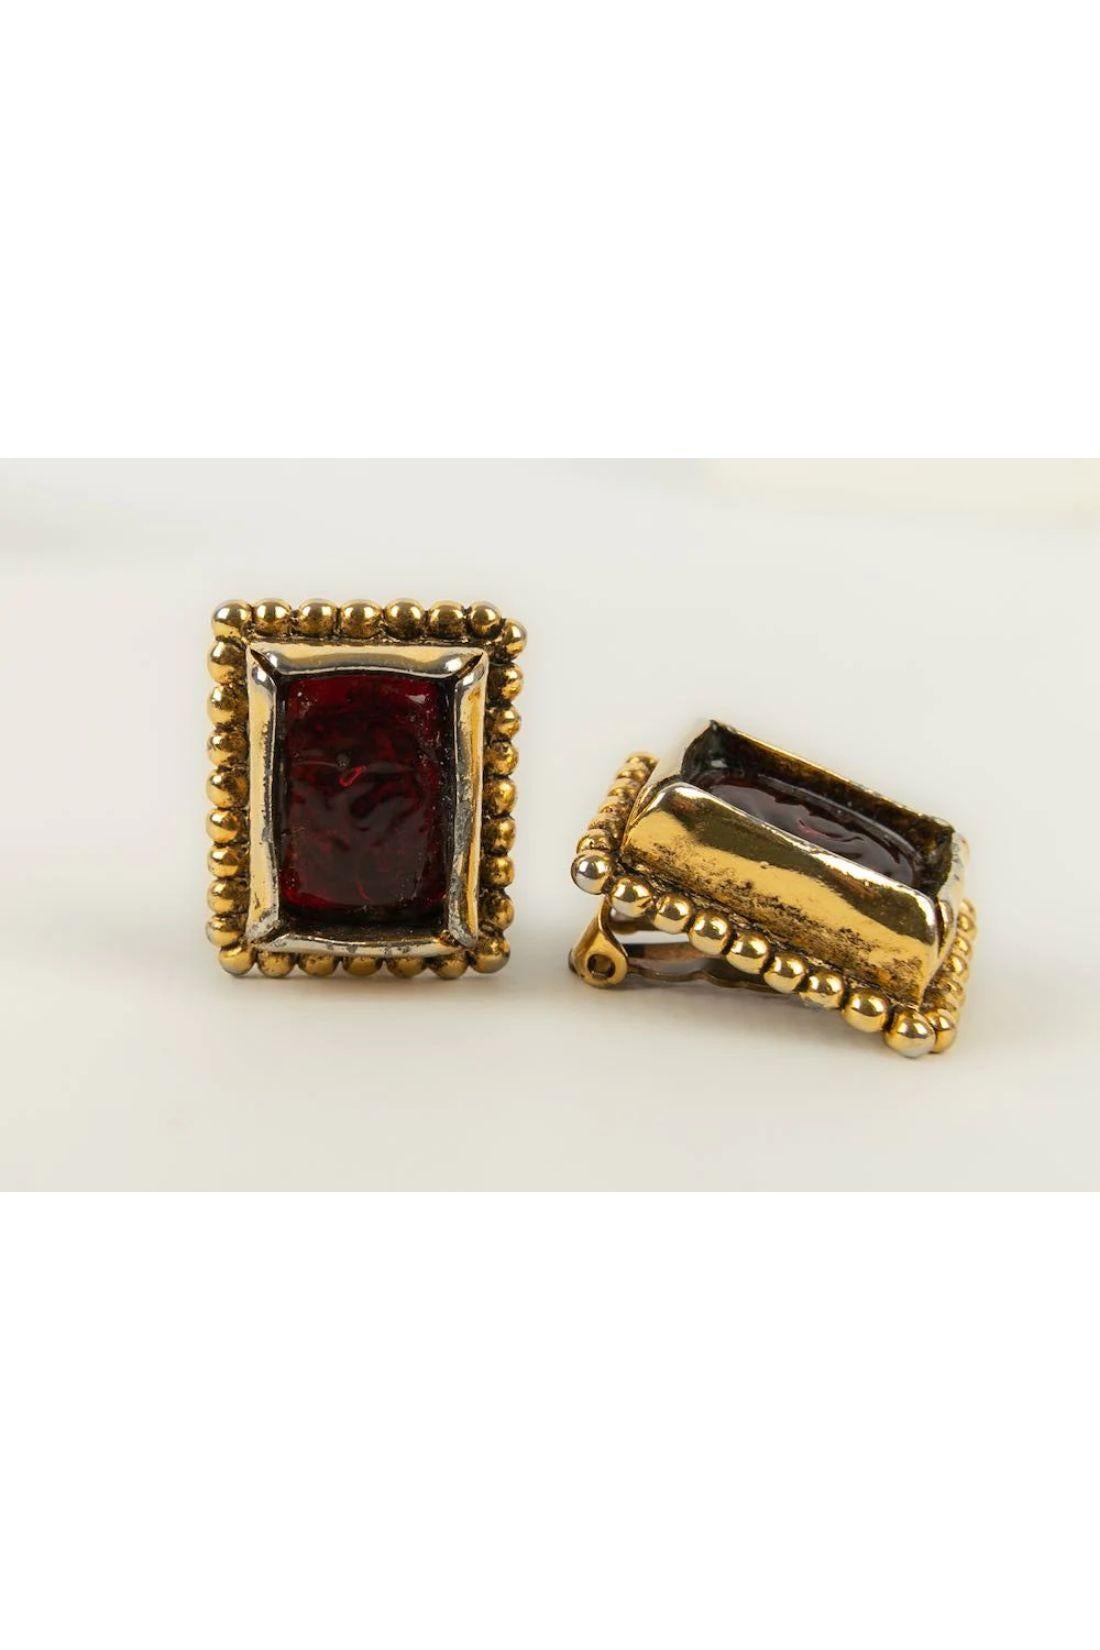 Chanel - Ohrringe aus Goldmetall und roter Glaspaste aus den 1980er Jahren.
Woloch worshop. 

Zusätzliche Informationen:
Abmessungen: 2,5 H cm

Bedingung: 
Guter Zustand

Verkäufer Ref Nummer: BOB96